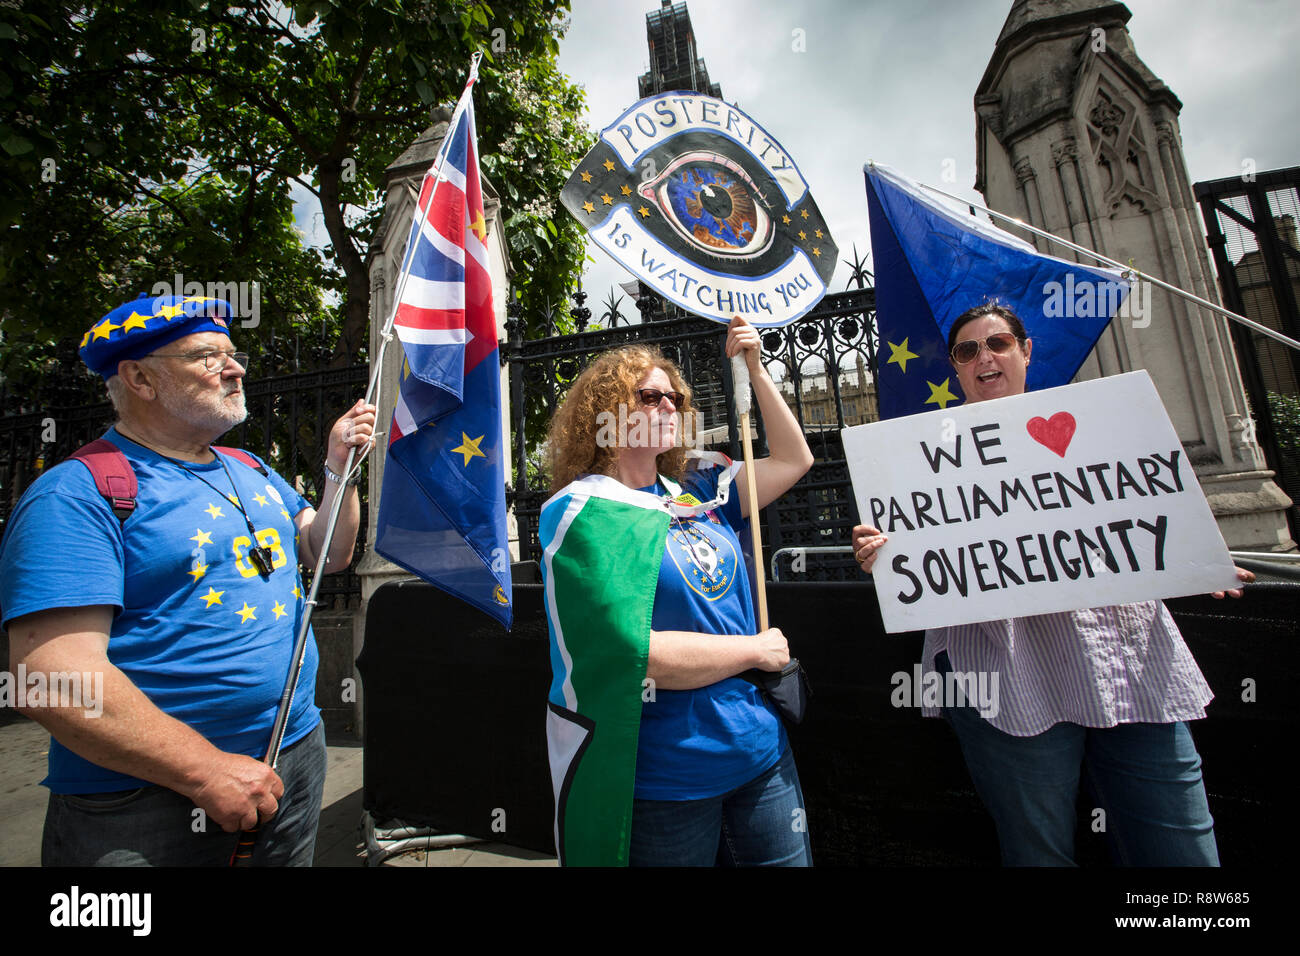 Brexit manifestants exigeant la souveraineté pour le Royaume-Uni à l'extérieur de Maisons du Parlement, Londres, Royaume-Uni Banque D'Images